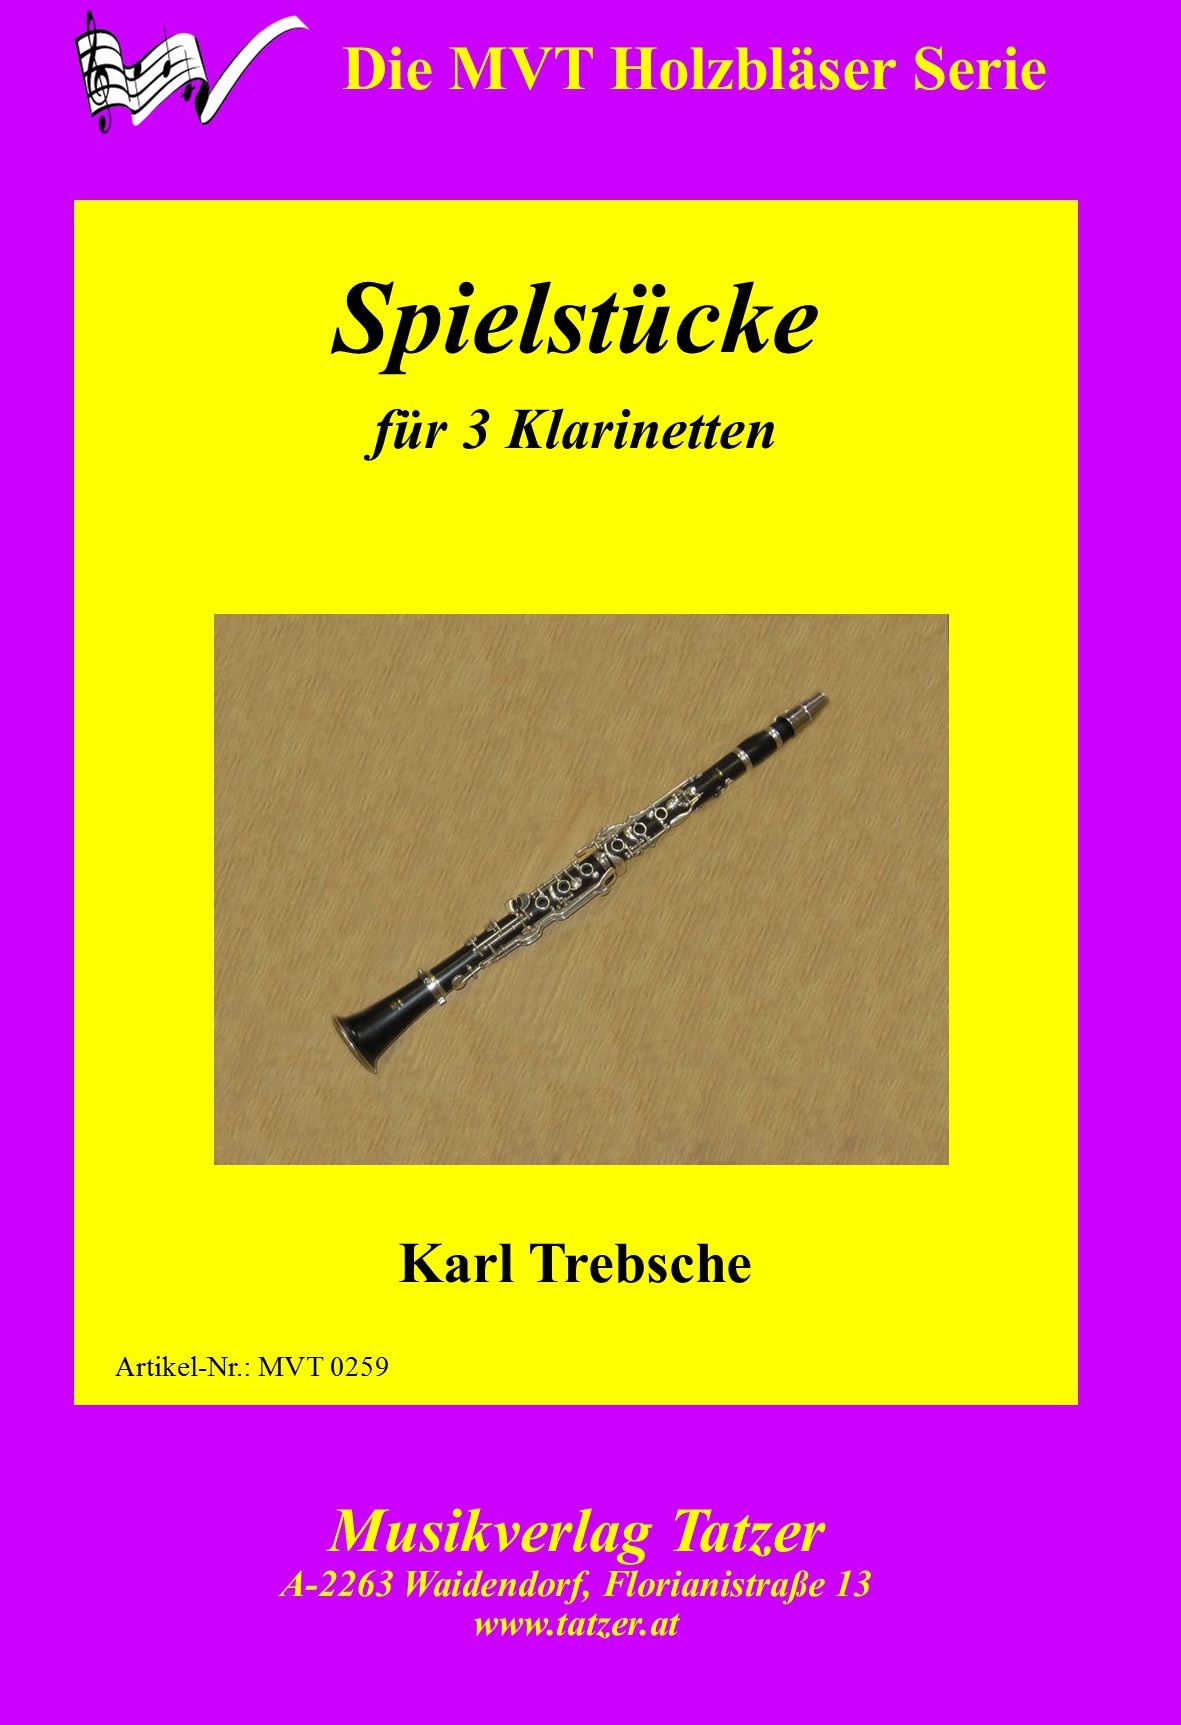 Spielstücke für 3 Klarinetten, Karl Trebsche